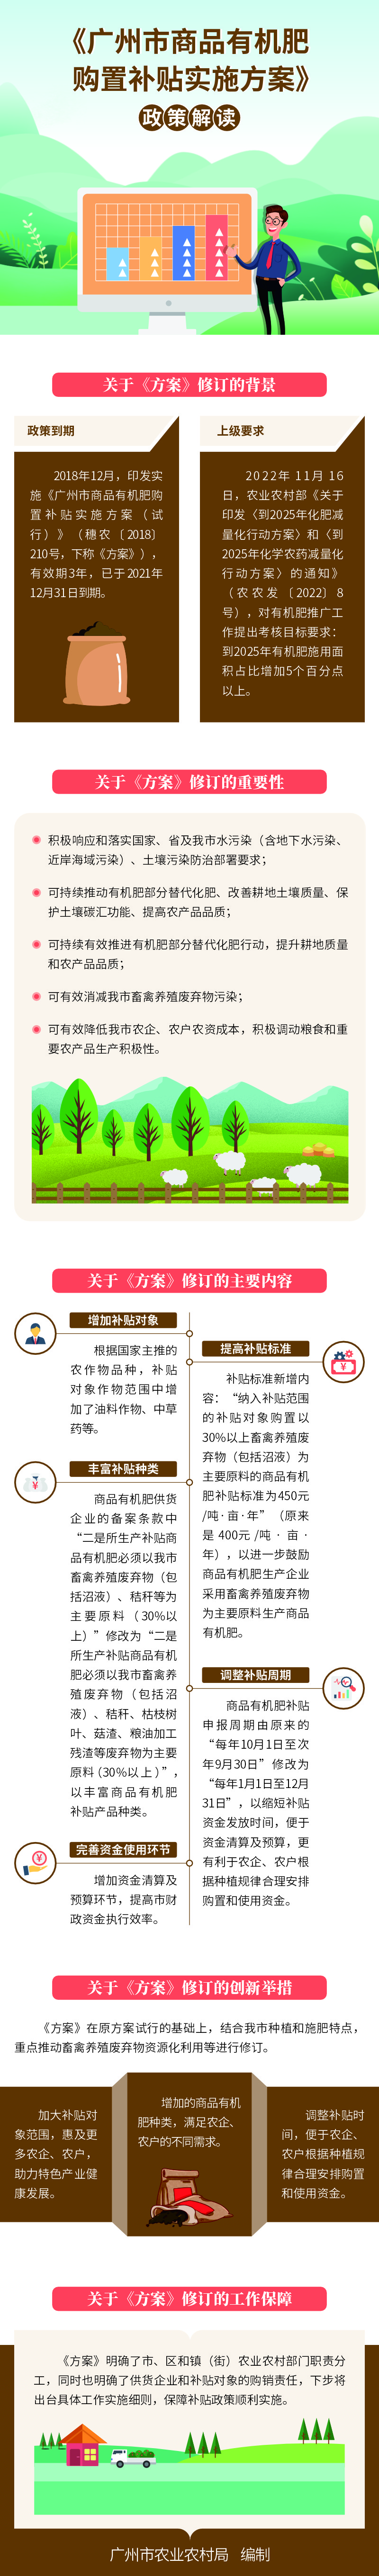 《广州市商品有机肥购置补贴实施方案》政策解读(2)1354.jpg